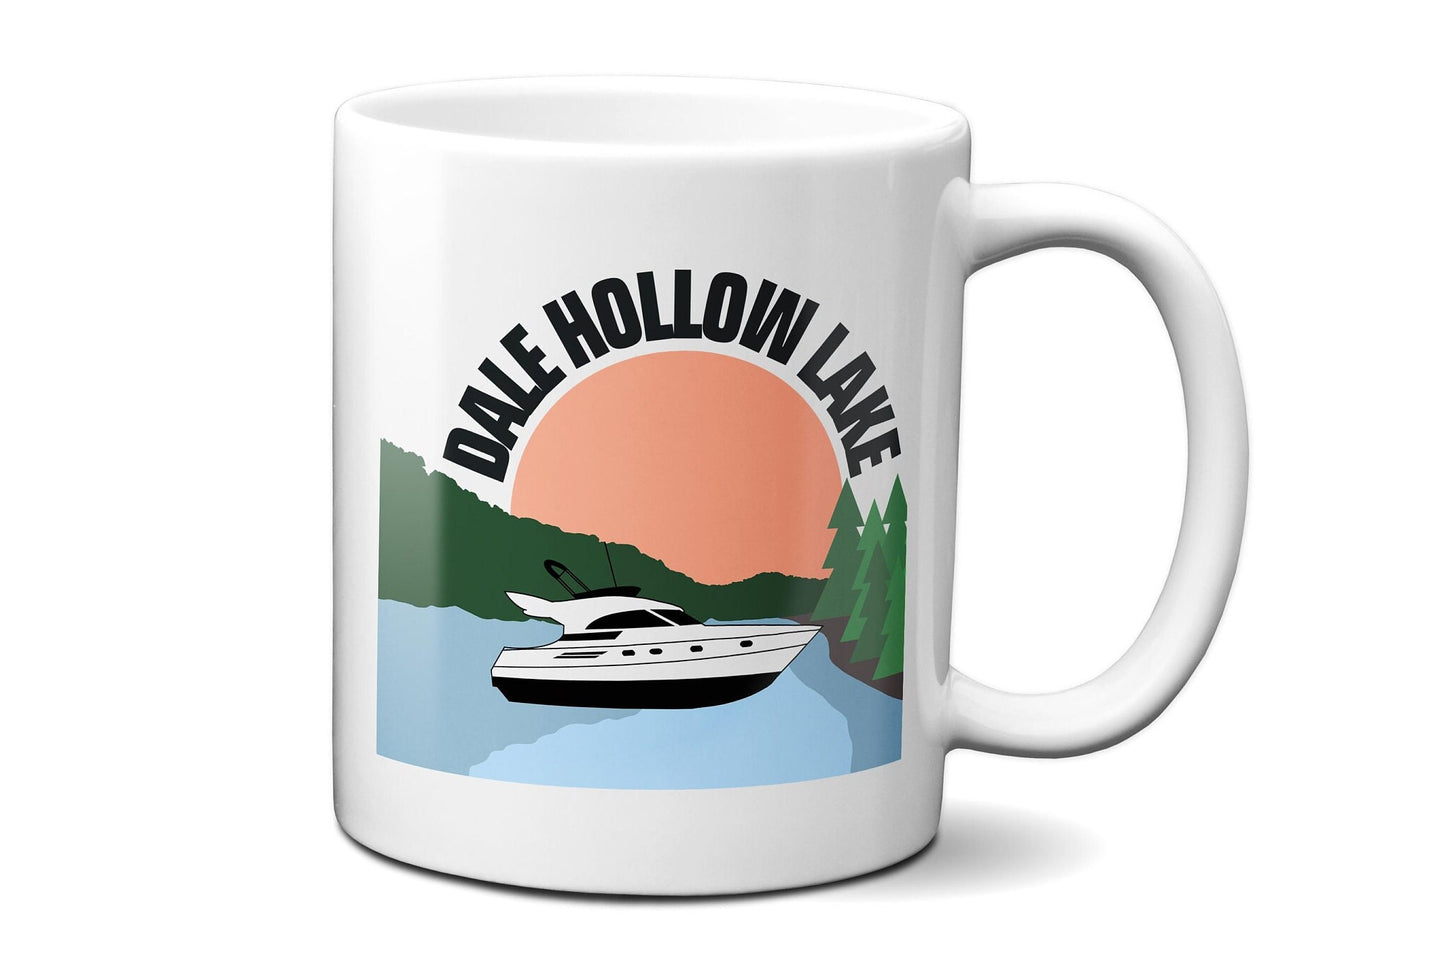 Dale Hollow Lake Speed Boat Mug | DHL Mug | Dale Hollow Mug | Speed Boat Gift Mug